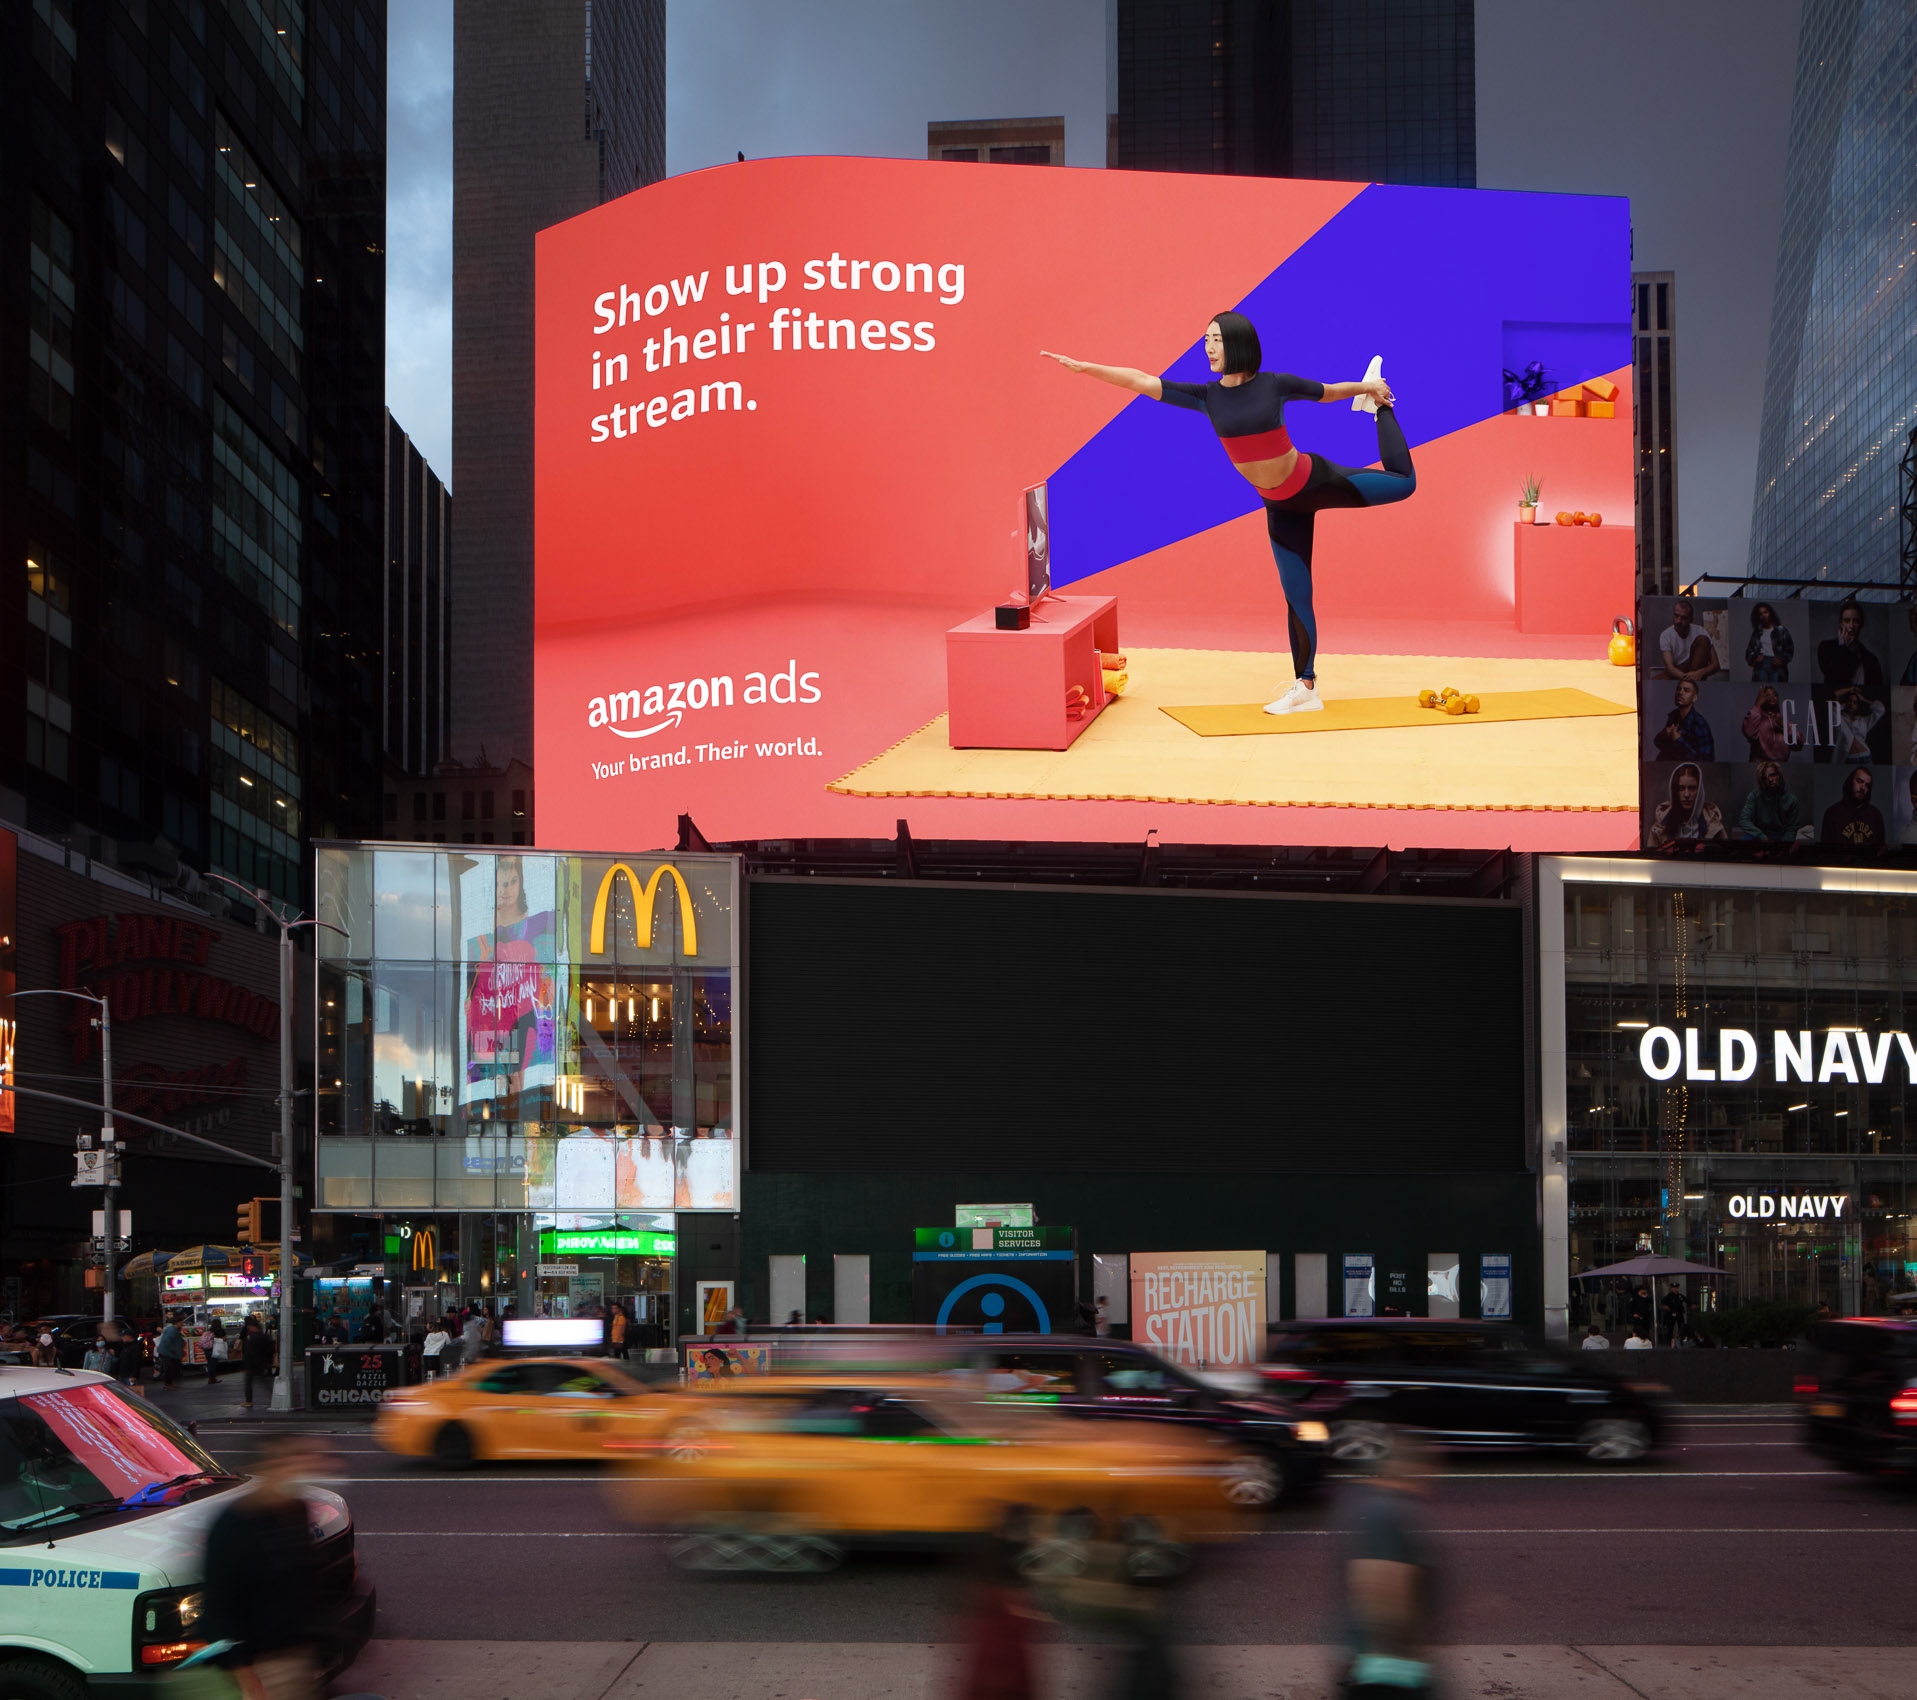 Amazon Ads - New York City